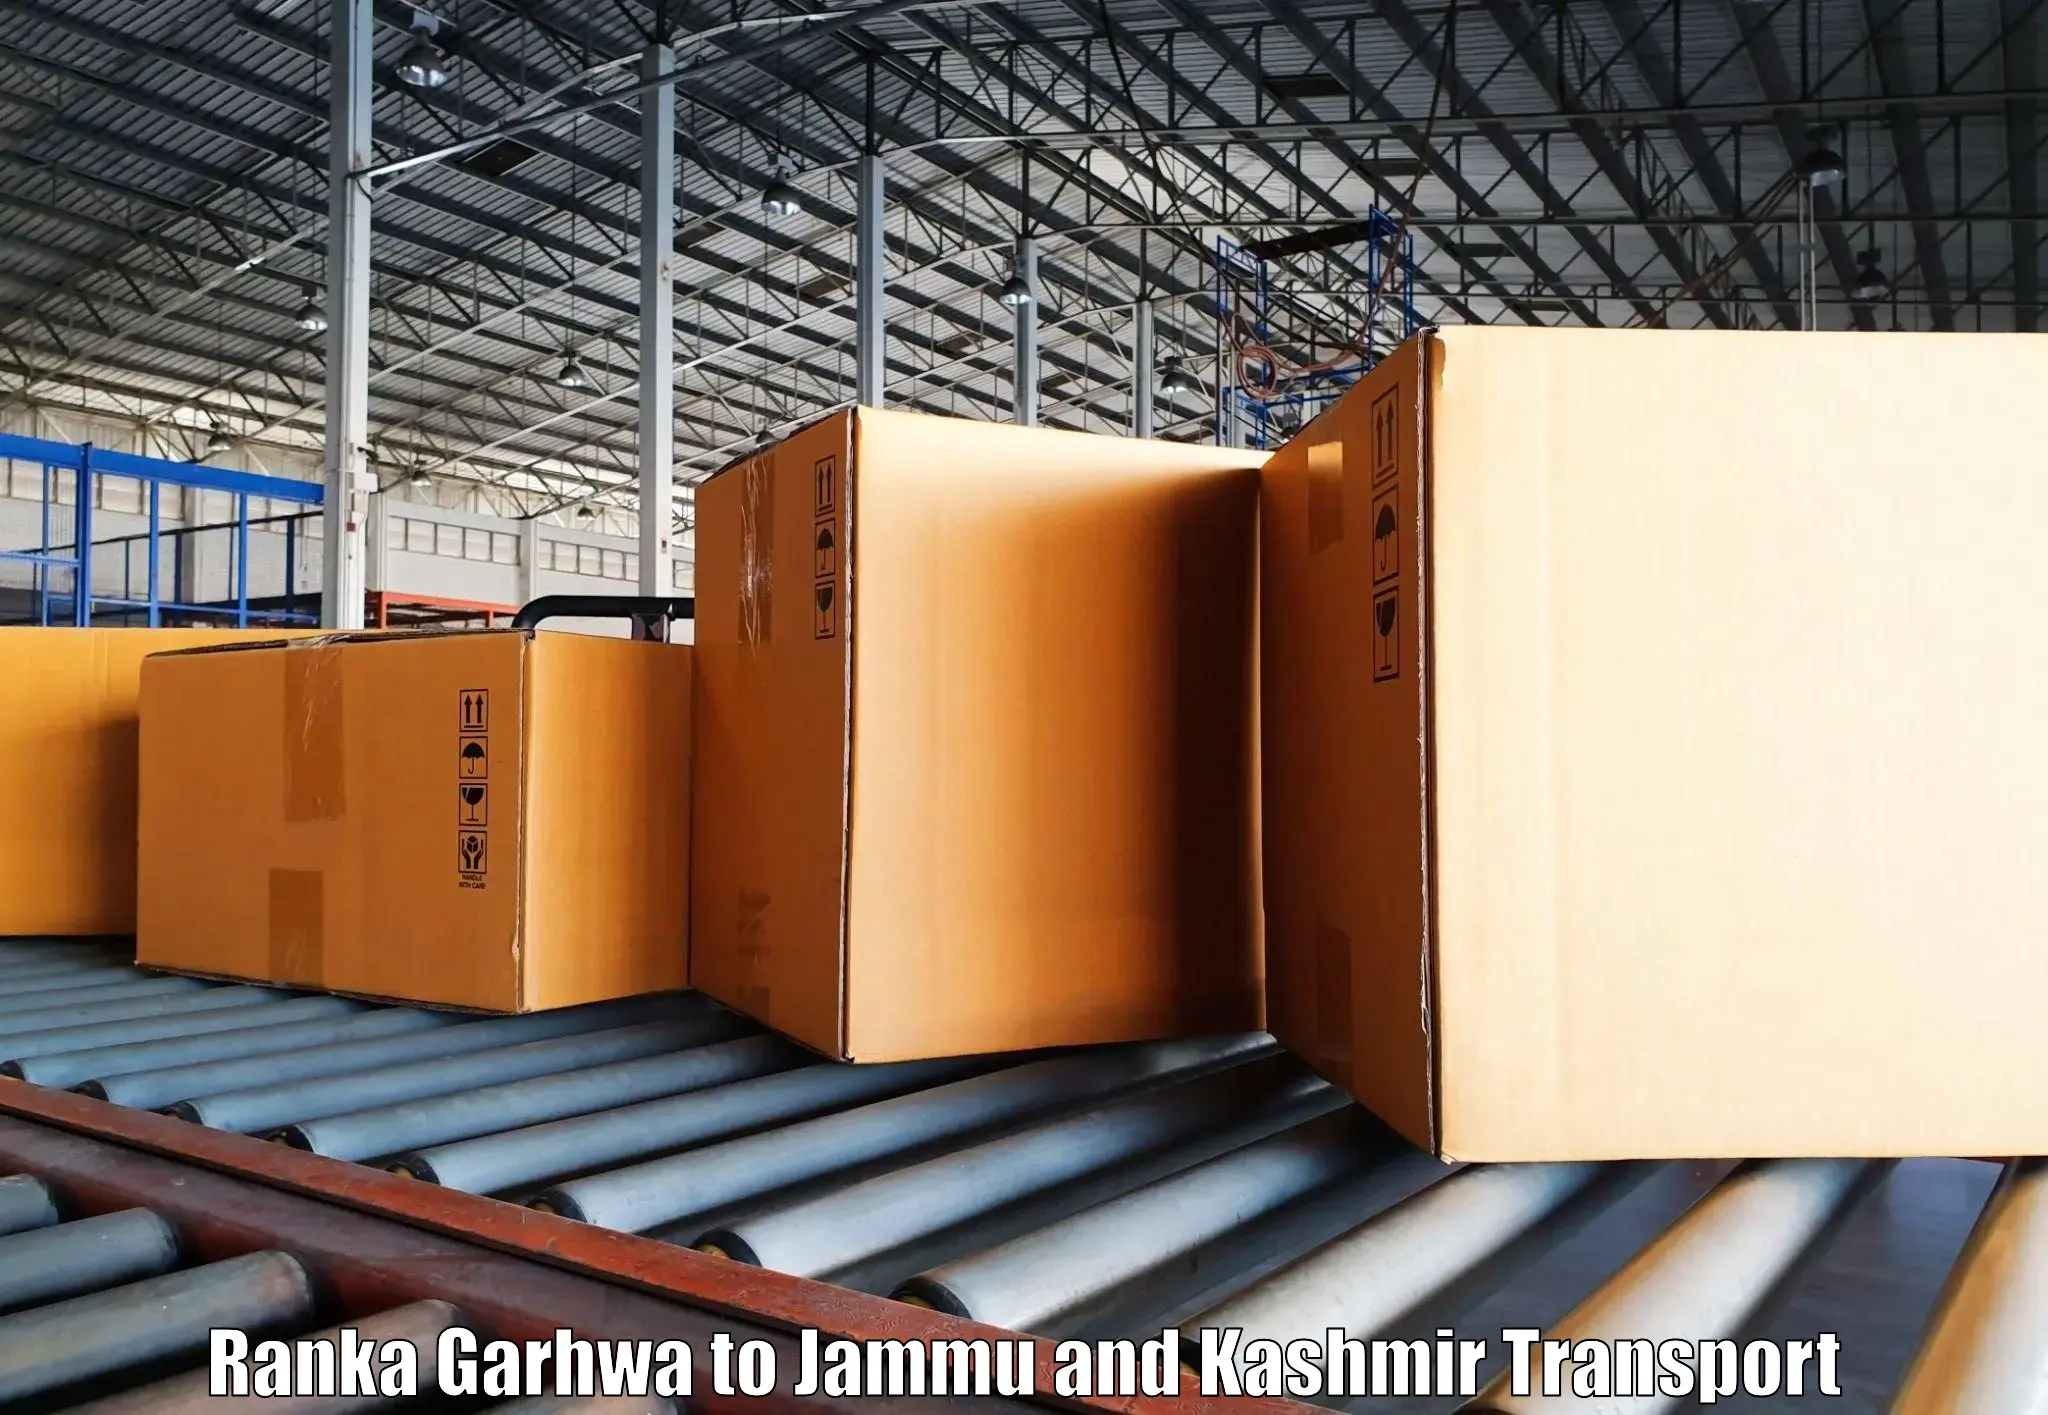 Truck transport companies in India Ranka Garhwa to University of Jammu